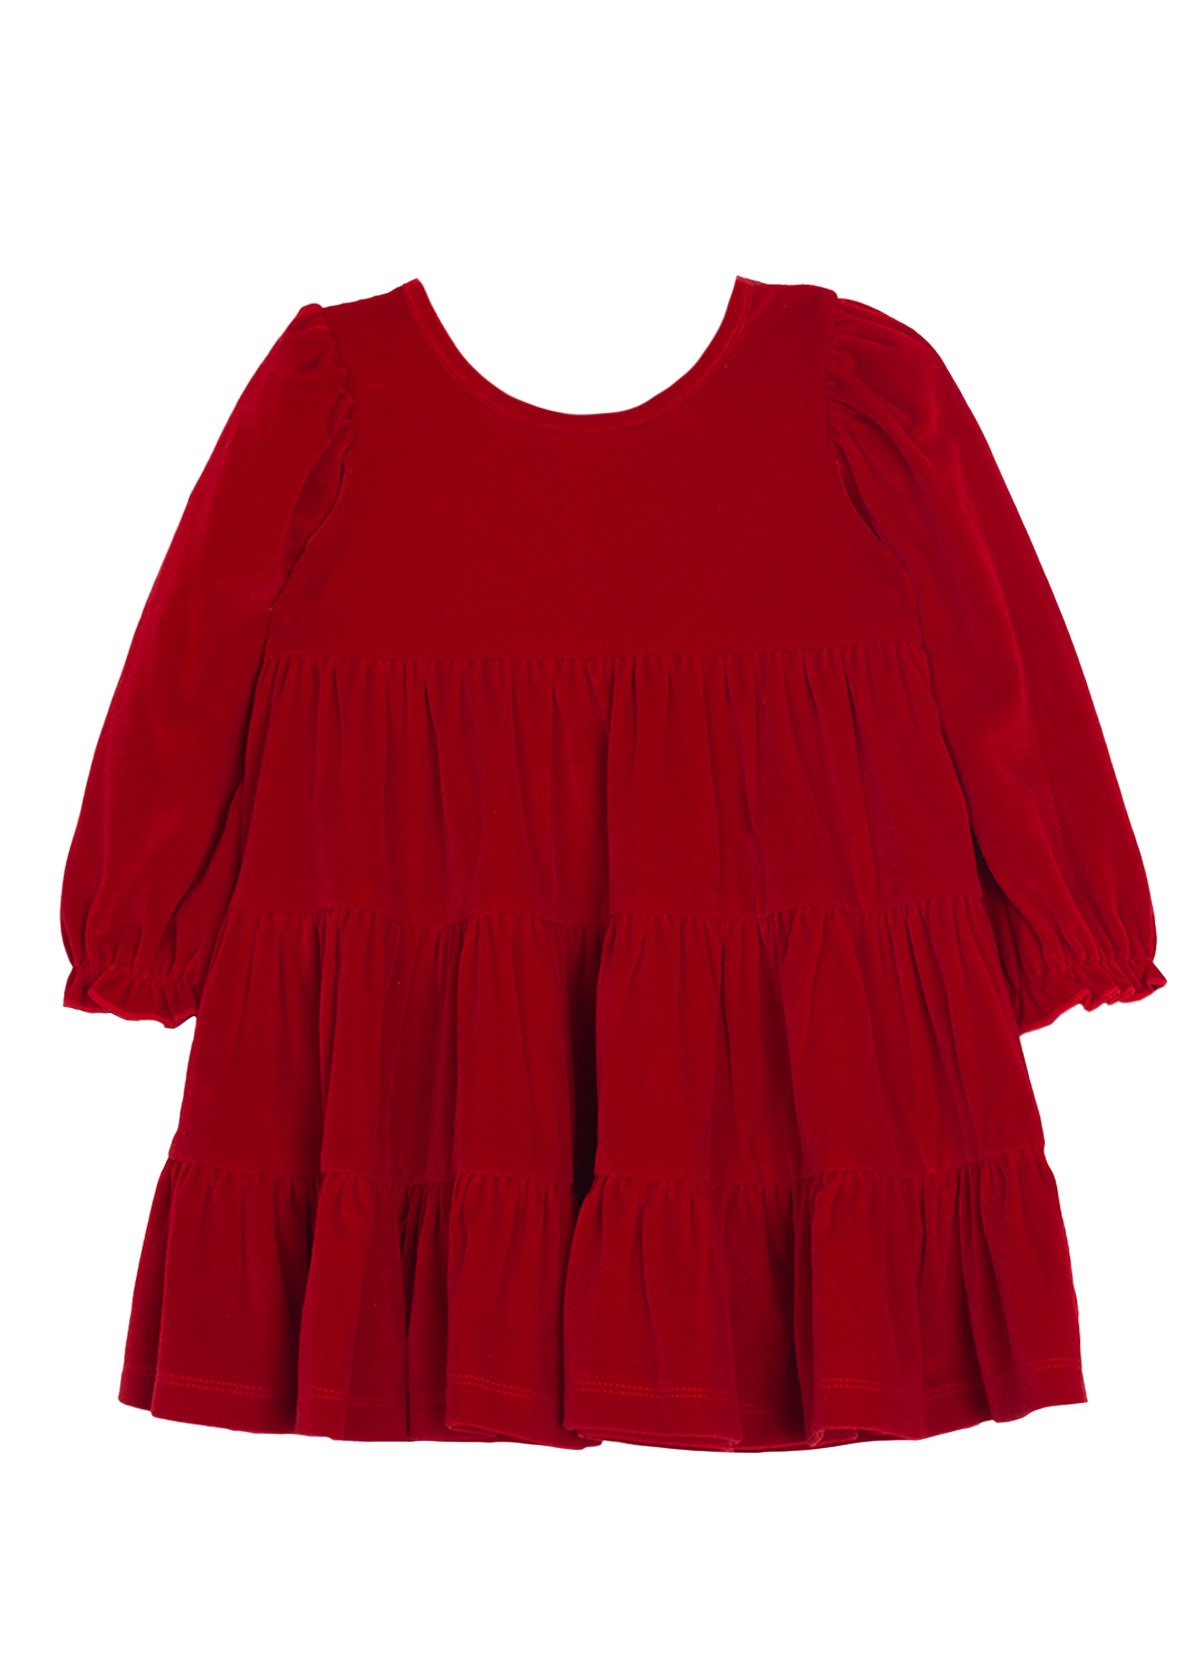 Isobella & Chloe Noella Long Sleeve Velvet Dress Red